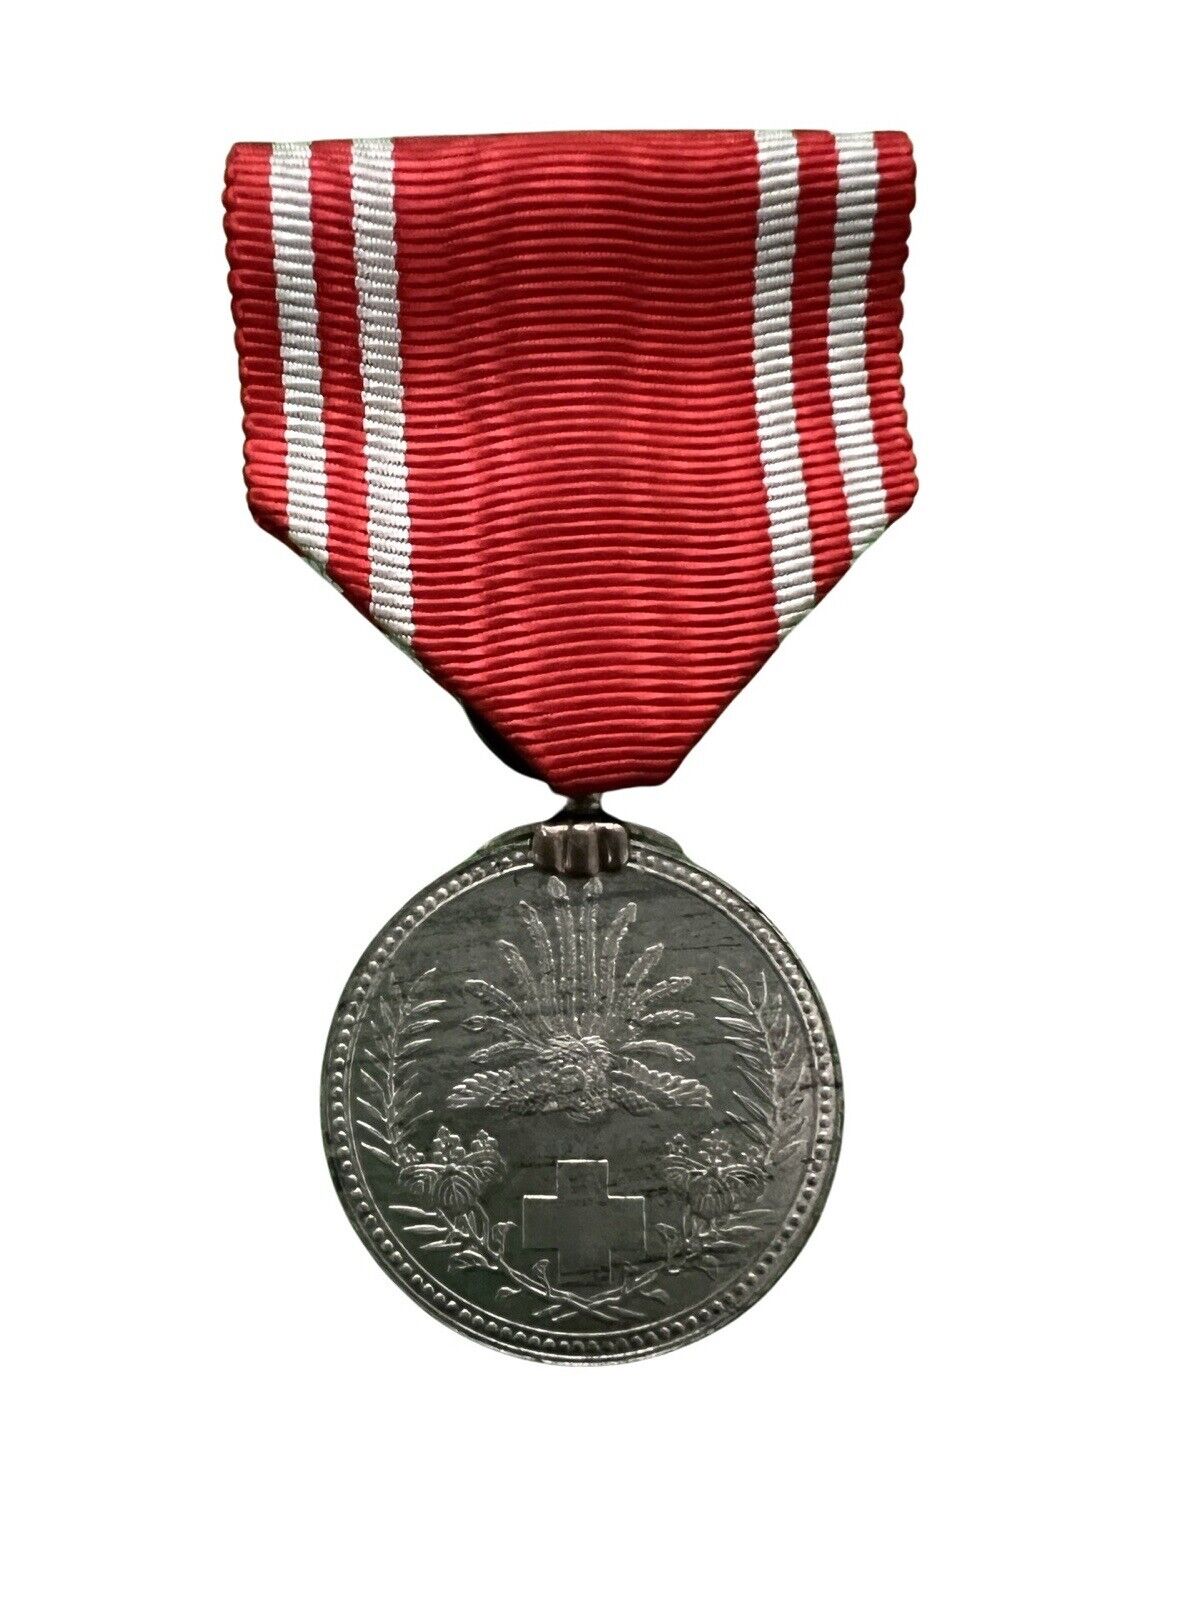 WWII WW2 Japanese Red Cross Men’s Member’s Medal Military Aluminum